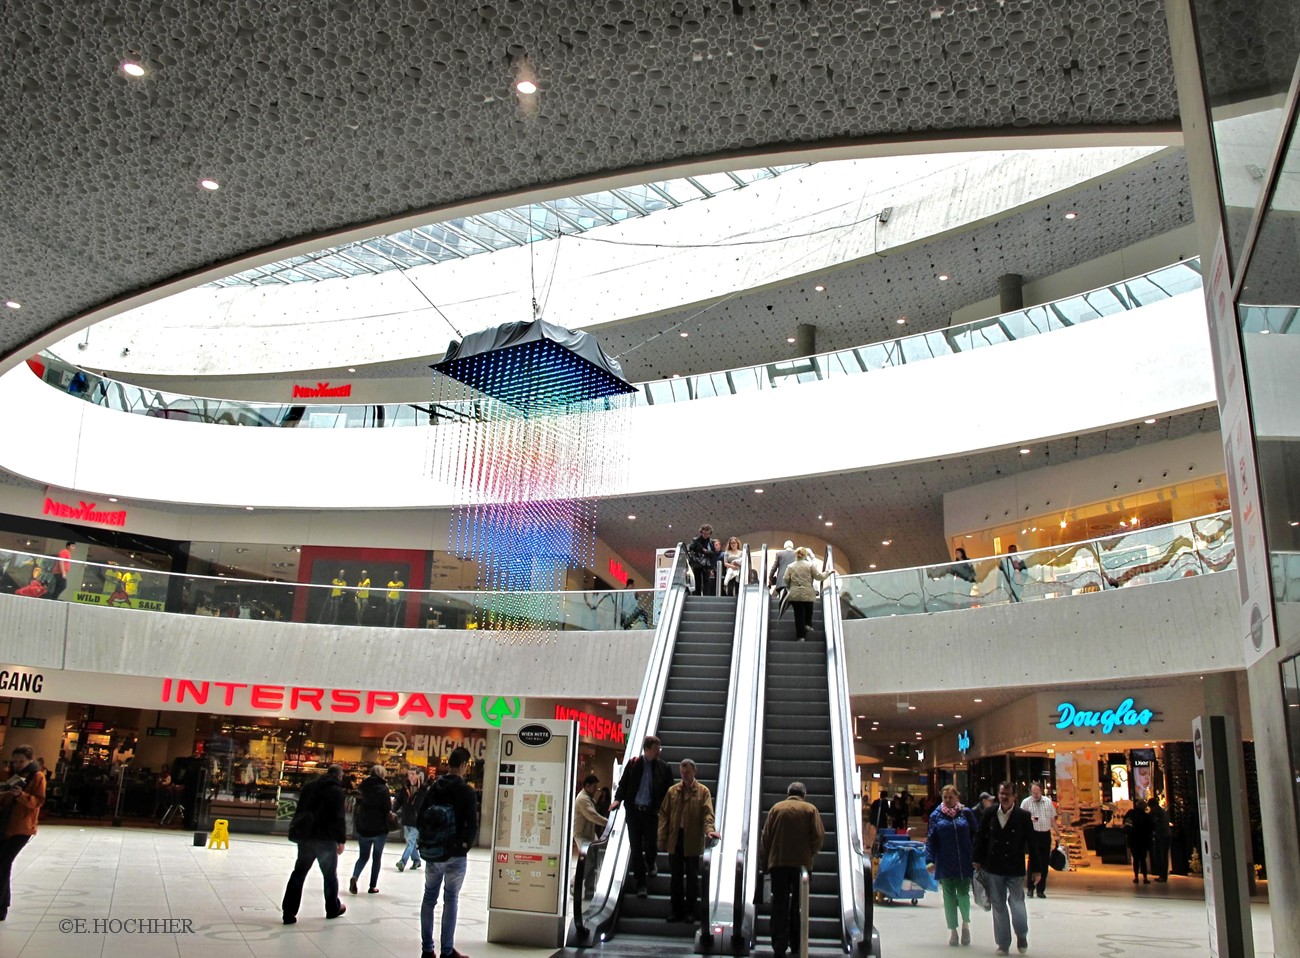 The Mall (Bahnhof Wien Mitte)